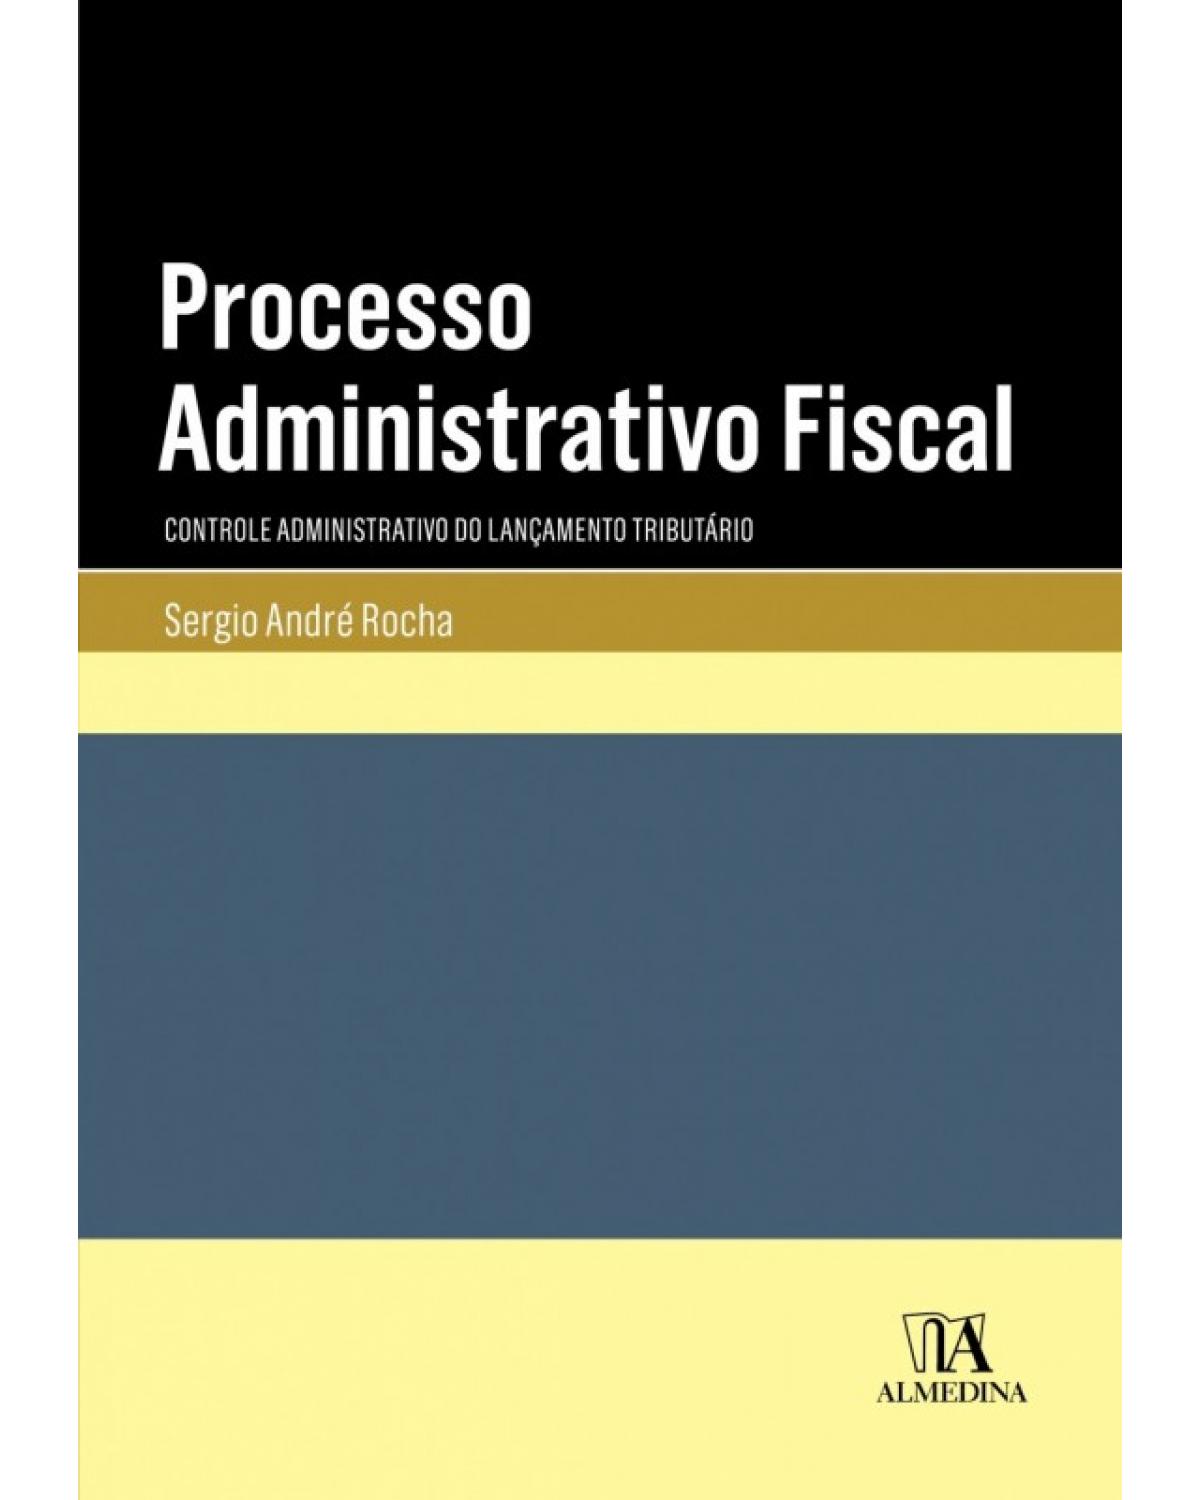 Processo administrativo fiscal: Controle administrativo do lançamento tributário